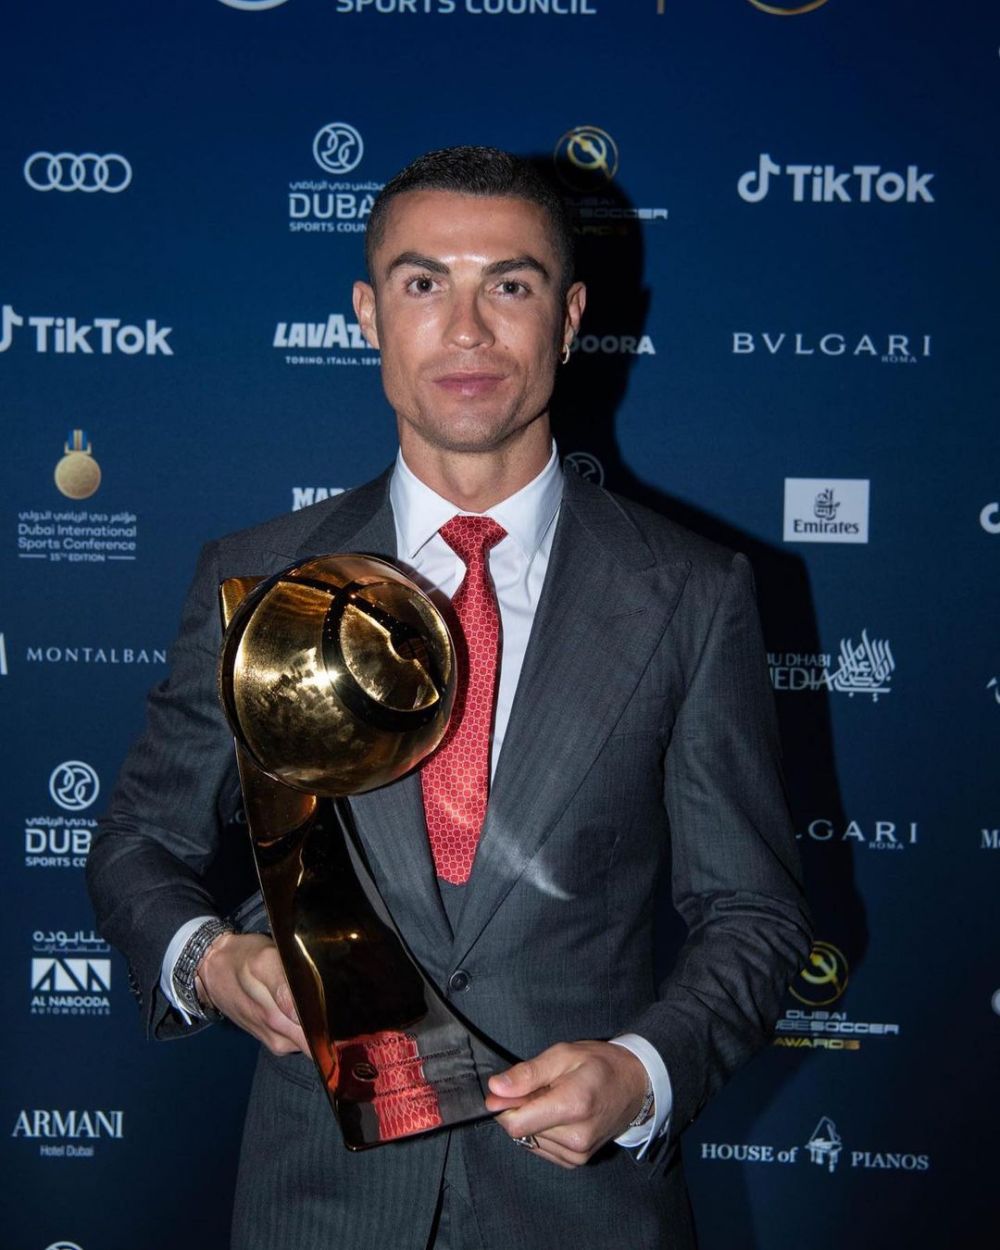 Ceasul lui Cristiano Ronaldo despre care vorbeste toata planeta! Bijuteria de 1.5 milioane de euro cu care a mers la gala Globe Soccer Awards_3